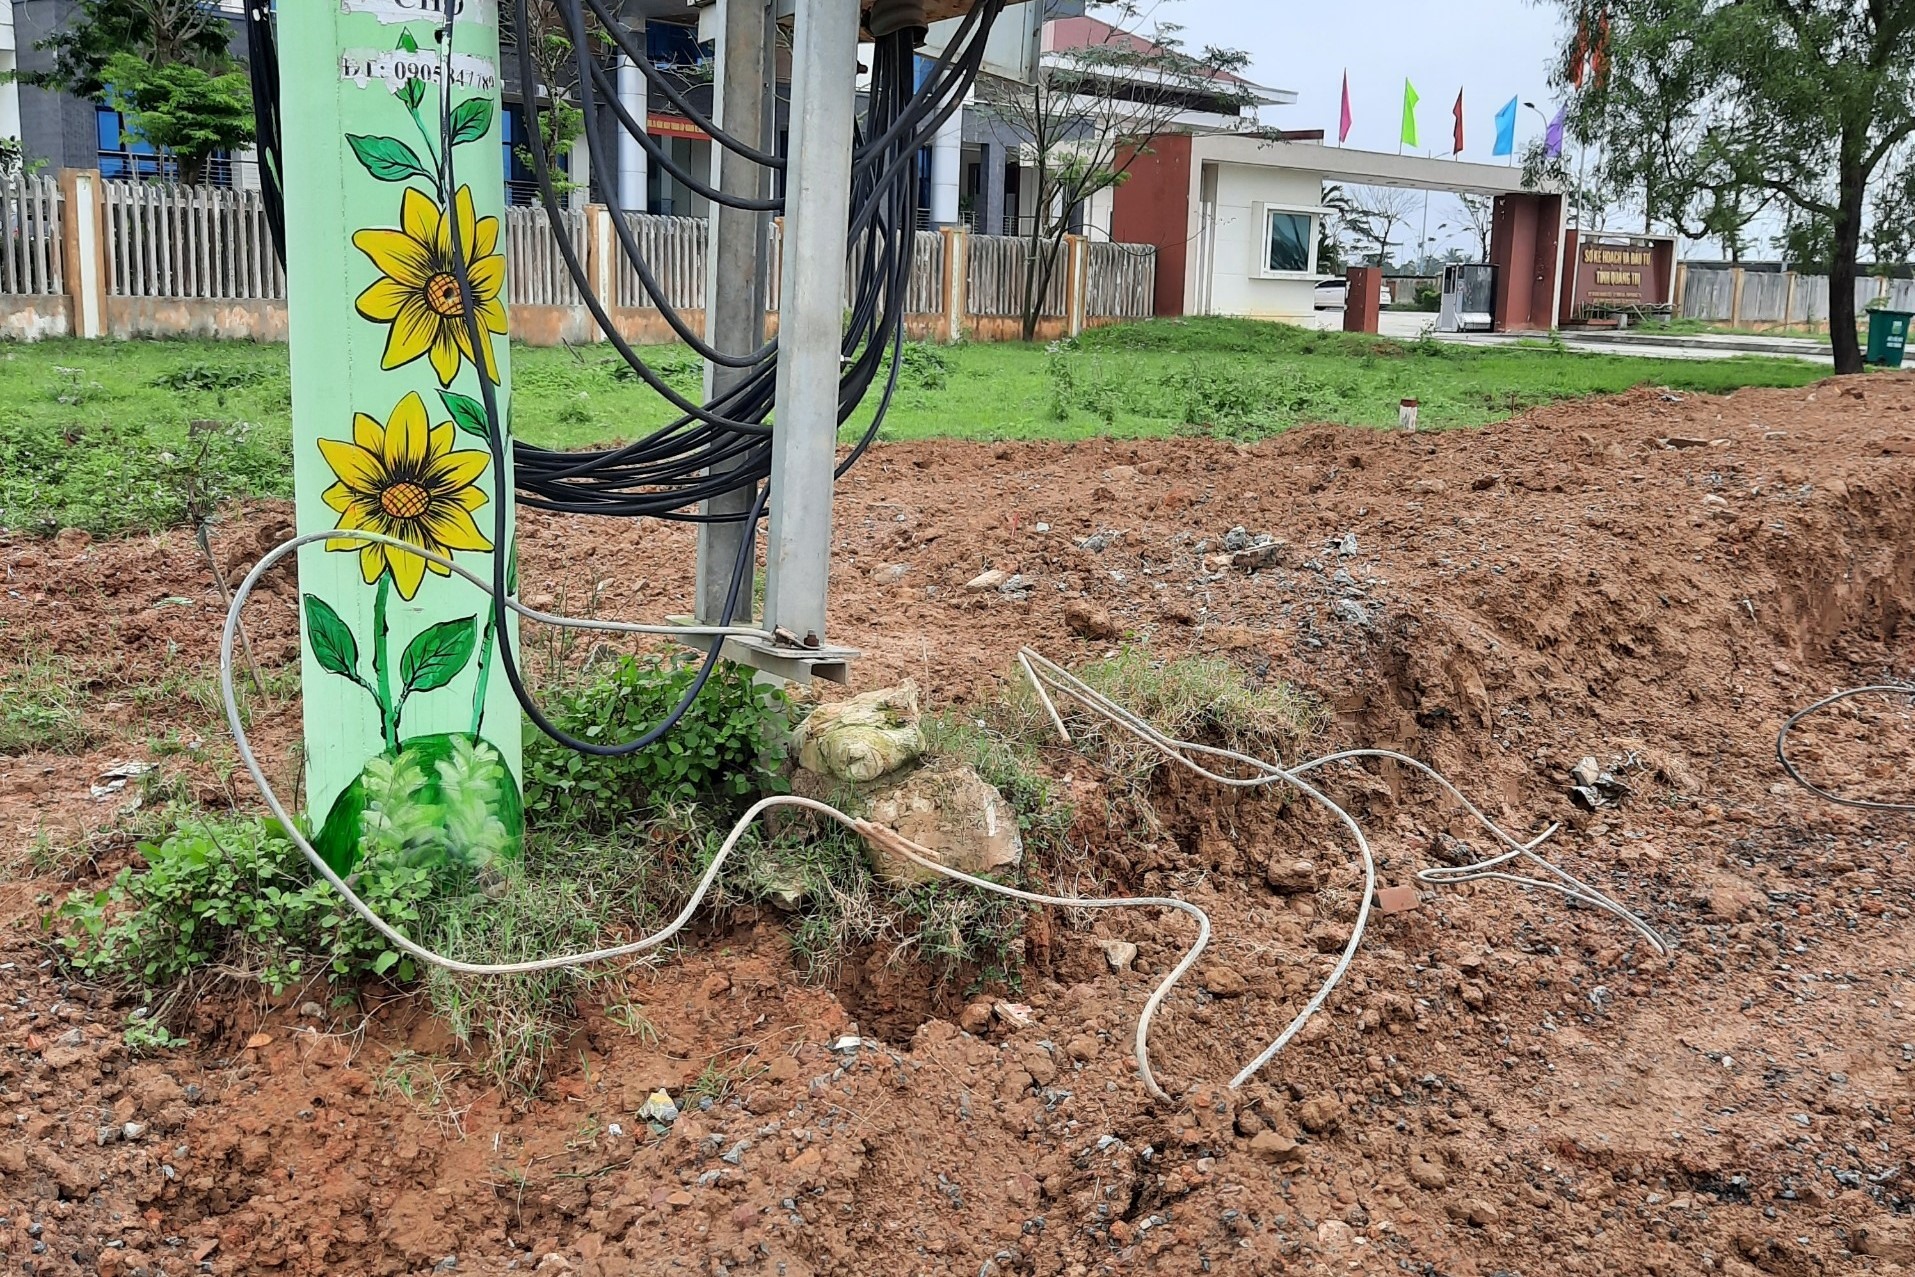 Quá trình thi công vỉa hè đã làm hư hỏng hệ thống tiếp địa trạm biến áp Đông Thanh 2 - Ảnh: Điện lực Đông Hà cung cấp